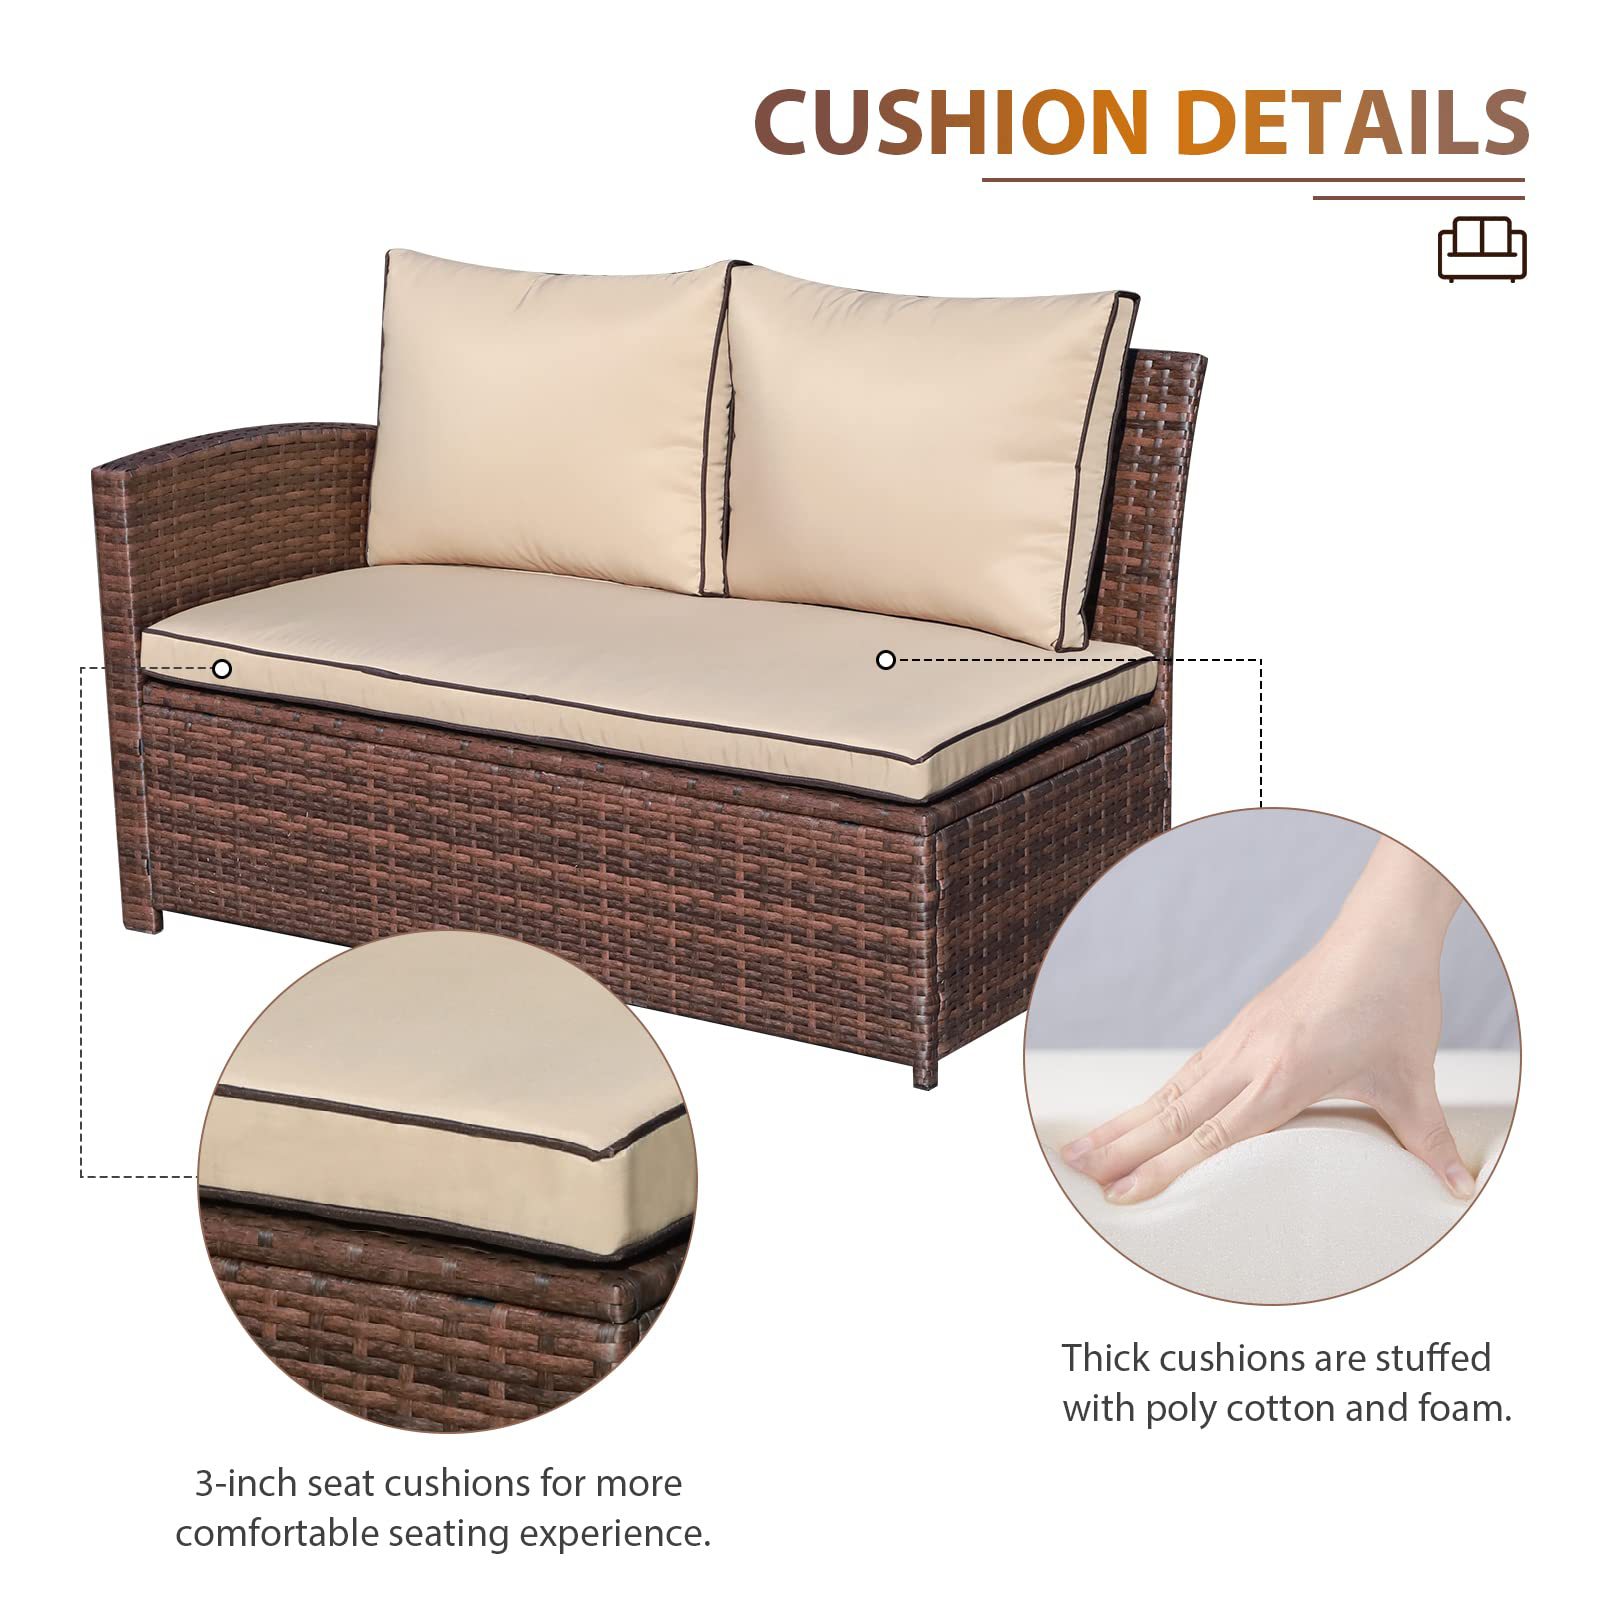 Outdoor Garden Lounge Free Combination Balconcy Contemporary Patio Furniture Sofa Set